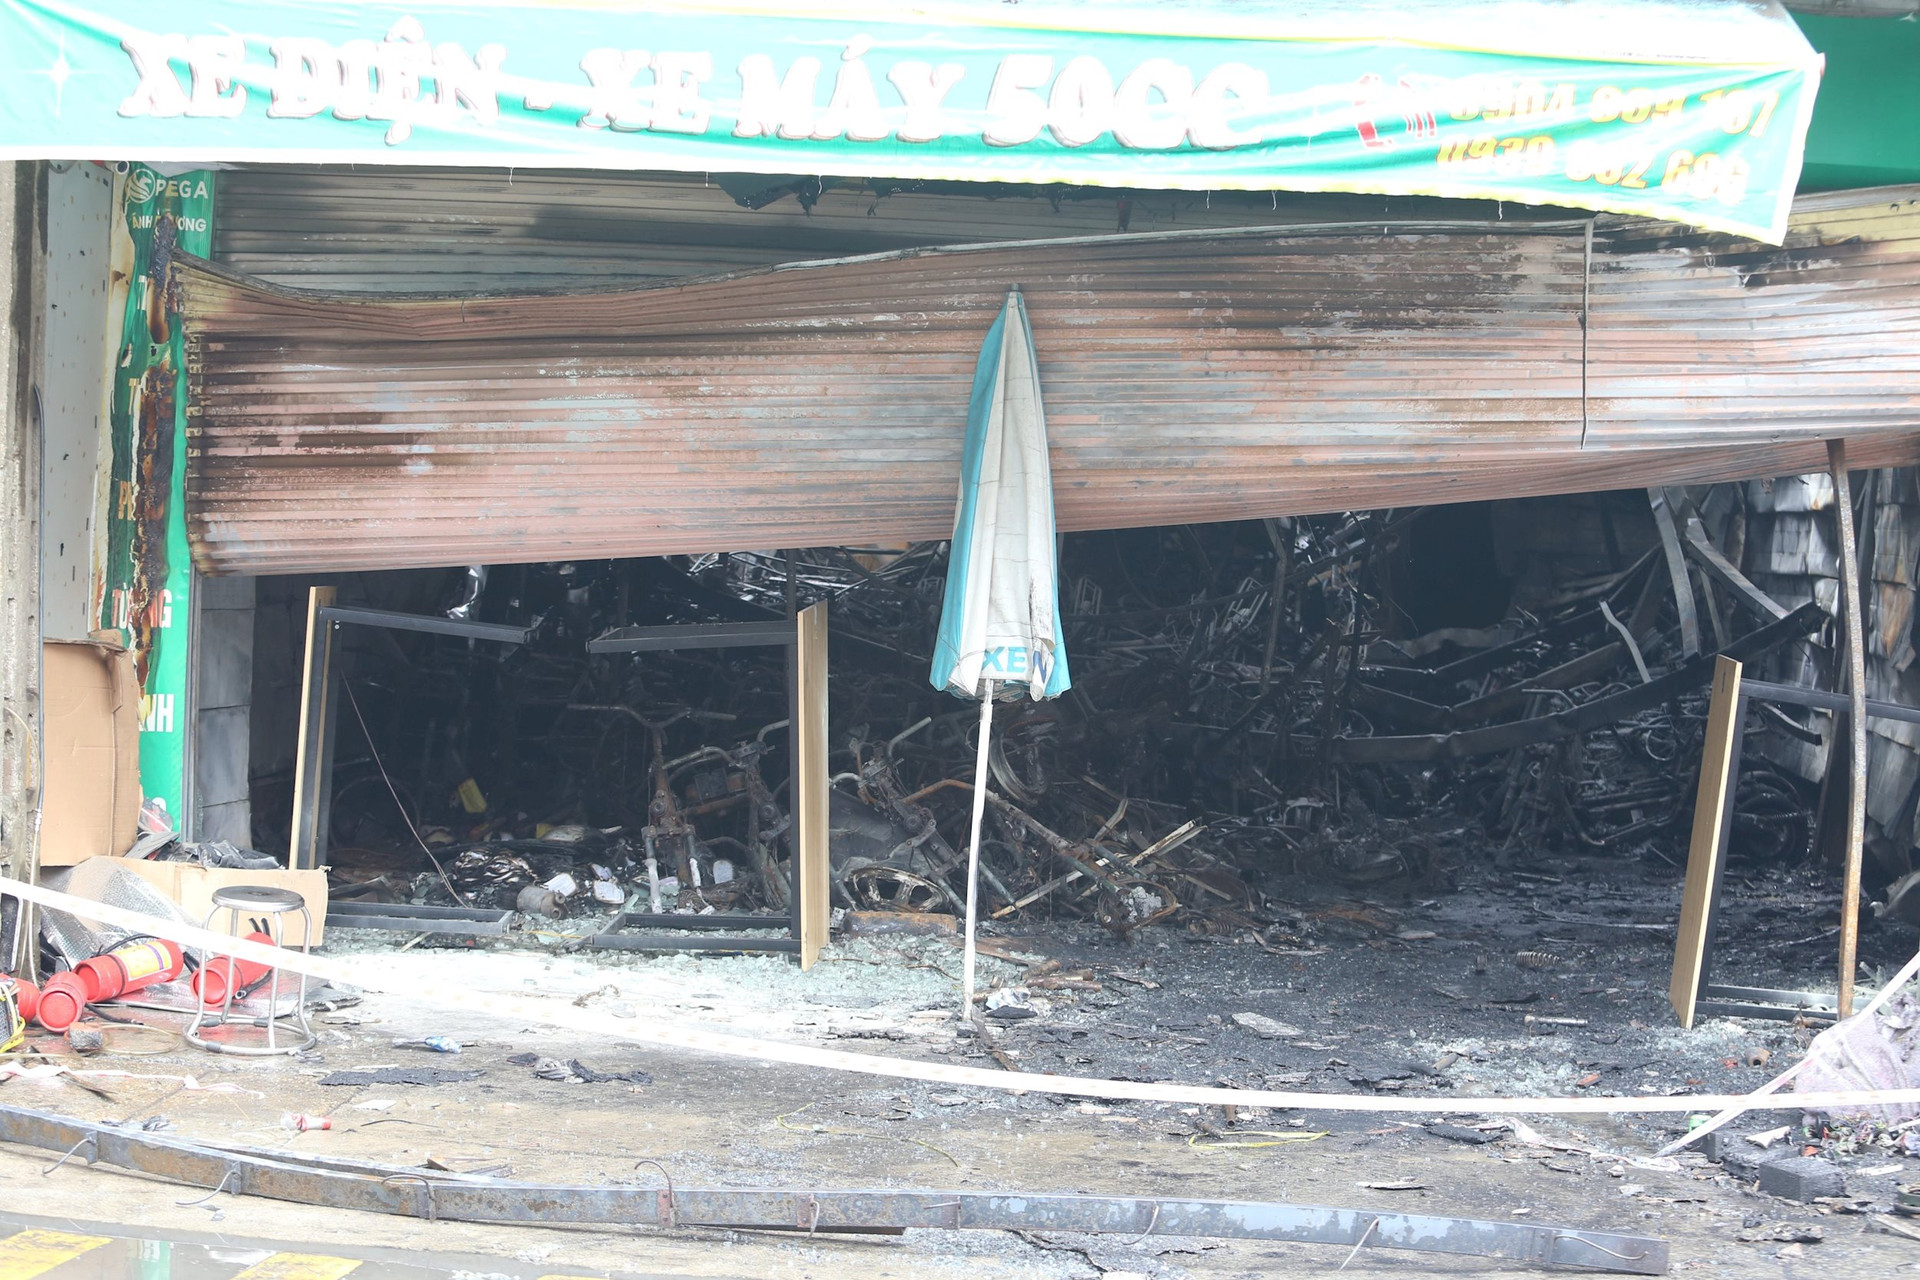 Hỏa hoạn tại ngôi nhà ở kết hợp kinh doanh xe đạp, xe máy điện khiến 3 người tử vong tại xã An Khánh, huyện Hoài Đức, Hà Nội ngày 19-7-2023 (Ảnh minh họa - Công Lý)